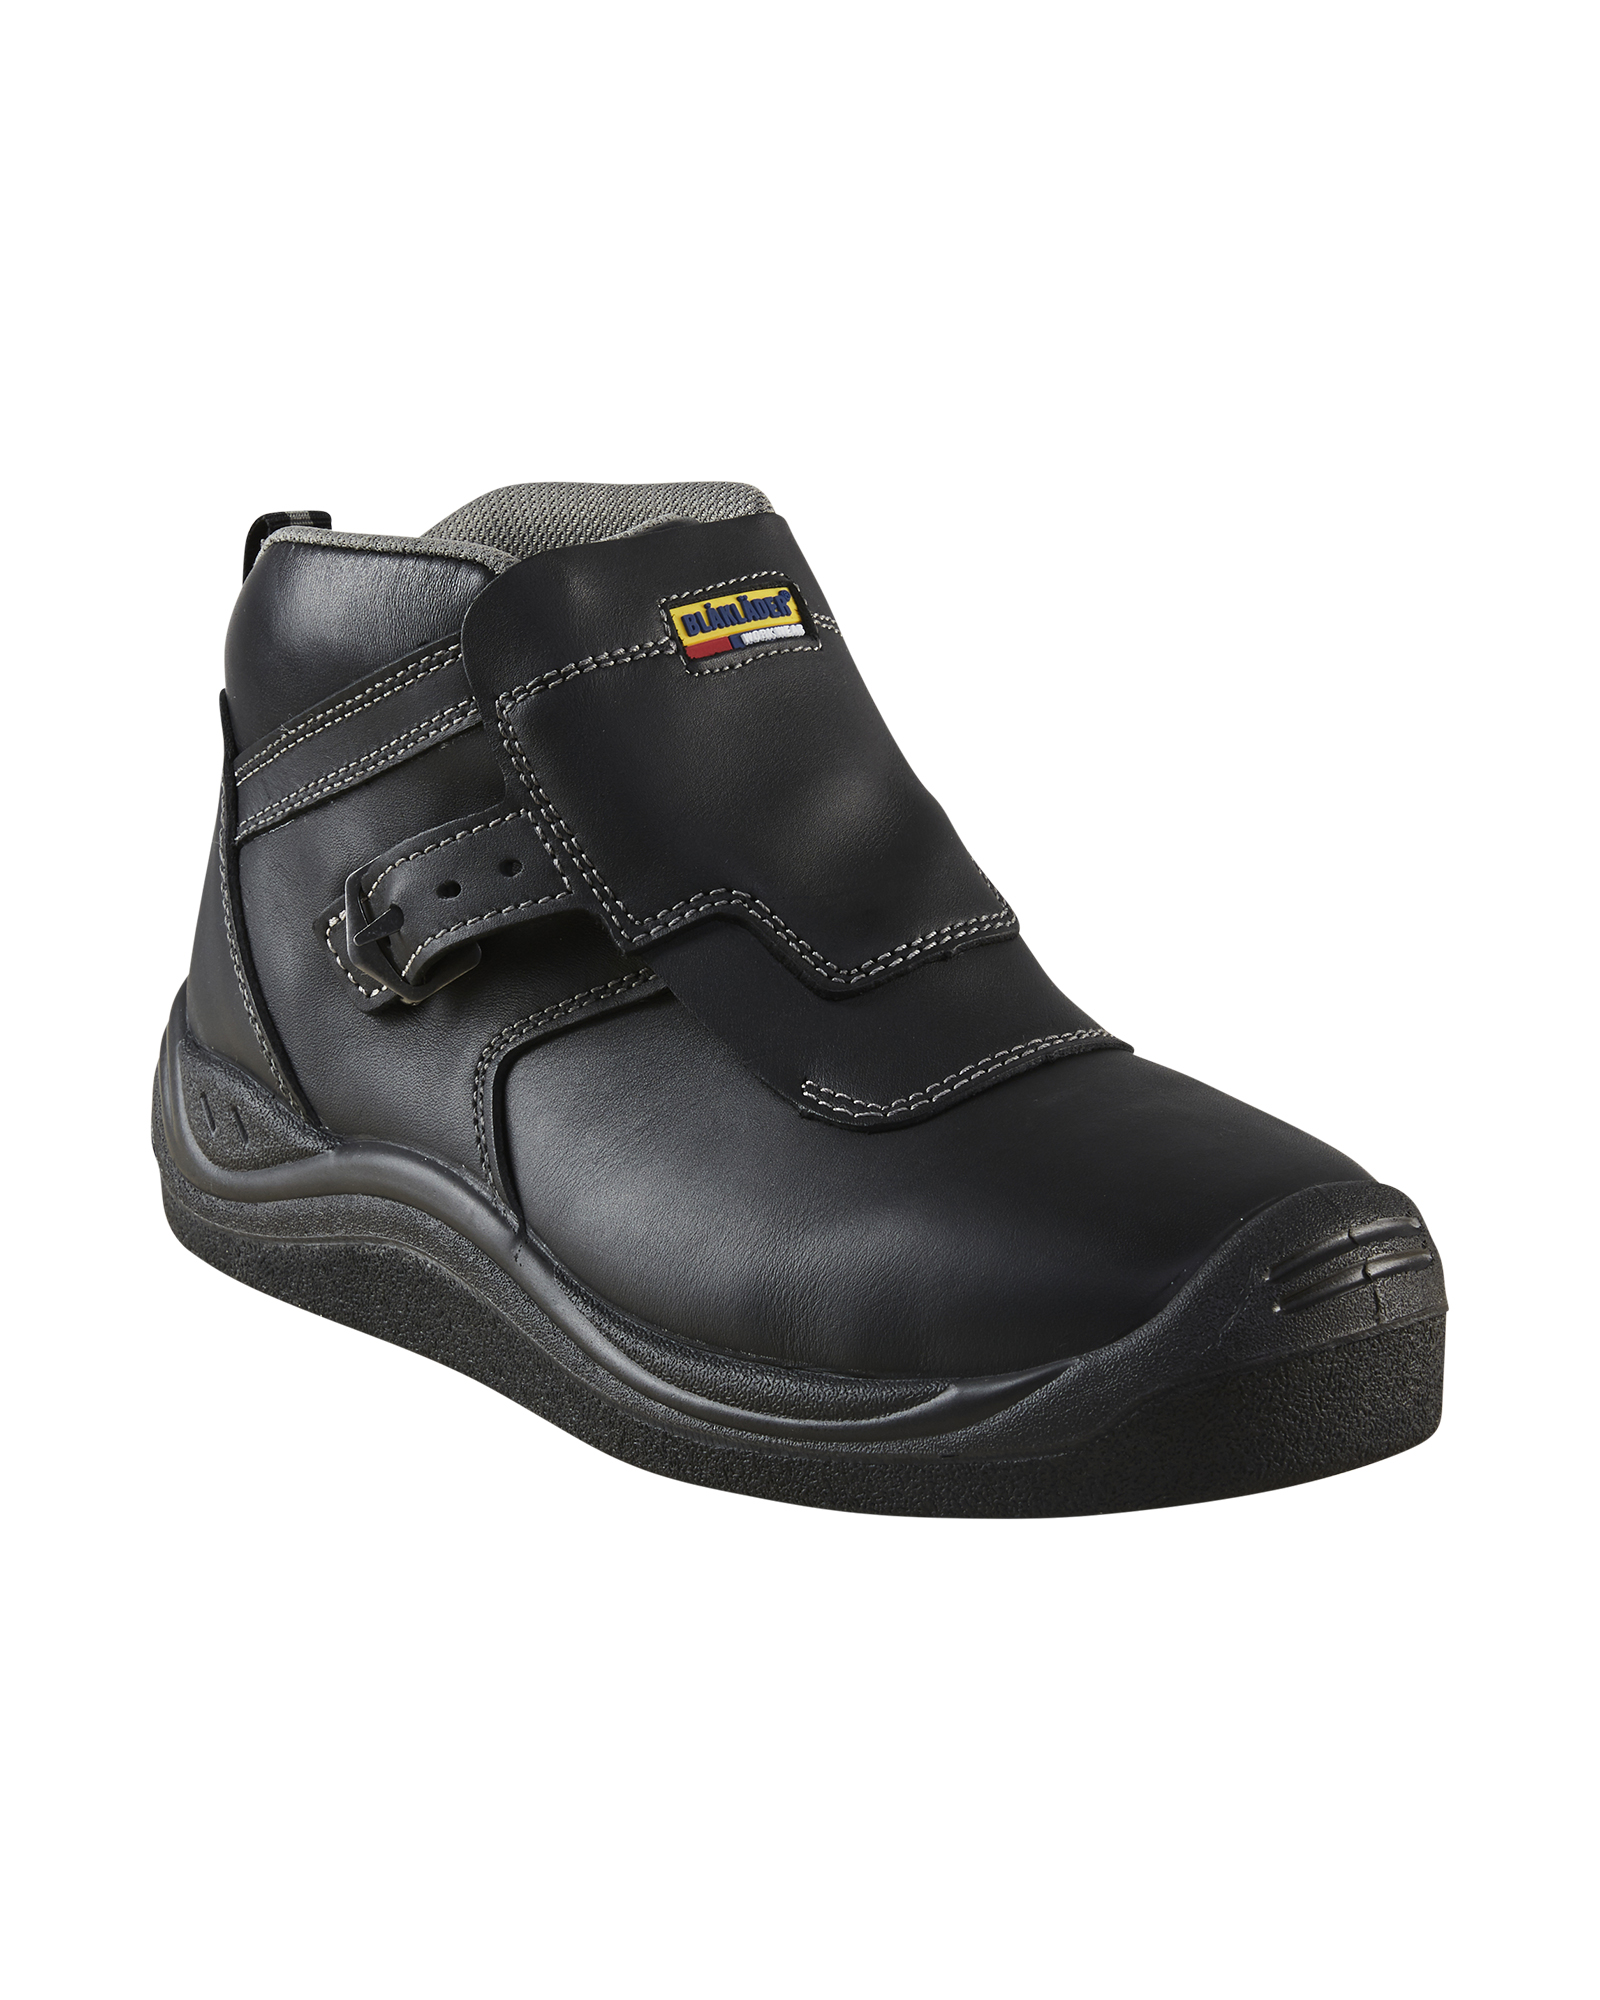 Blaklader Chaussures asphalte Haute 24190000 